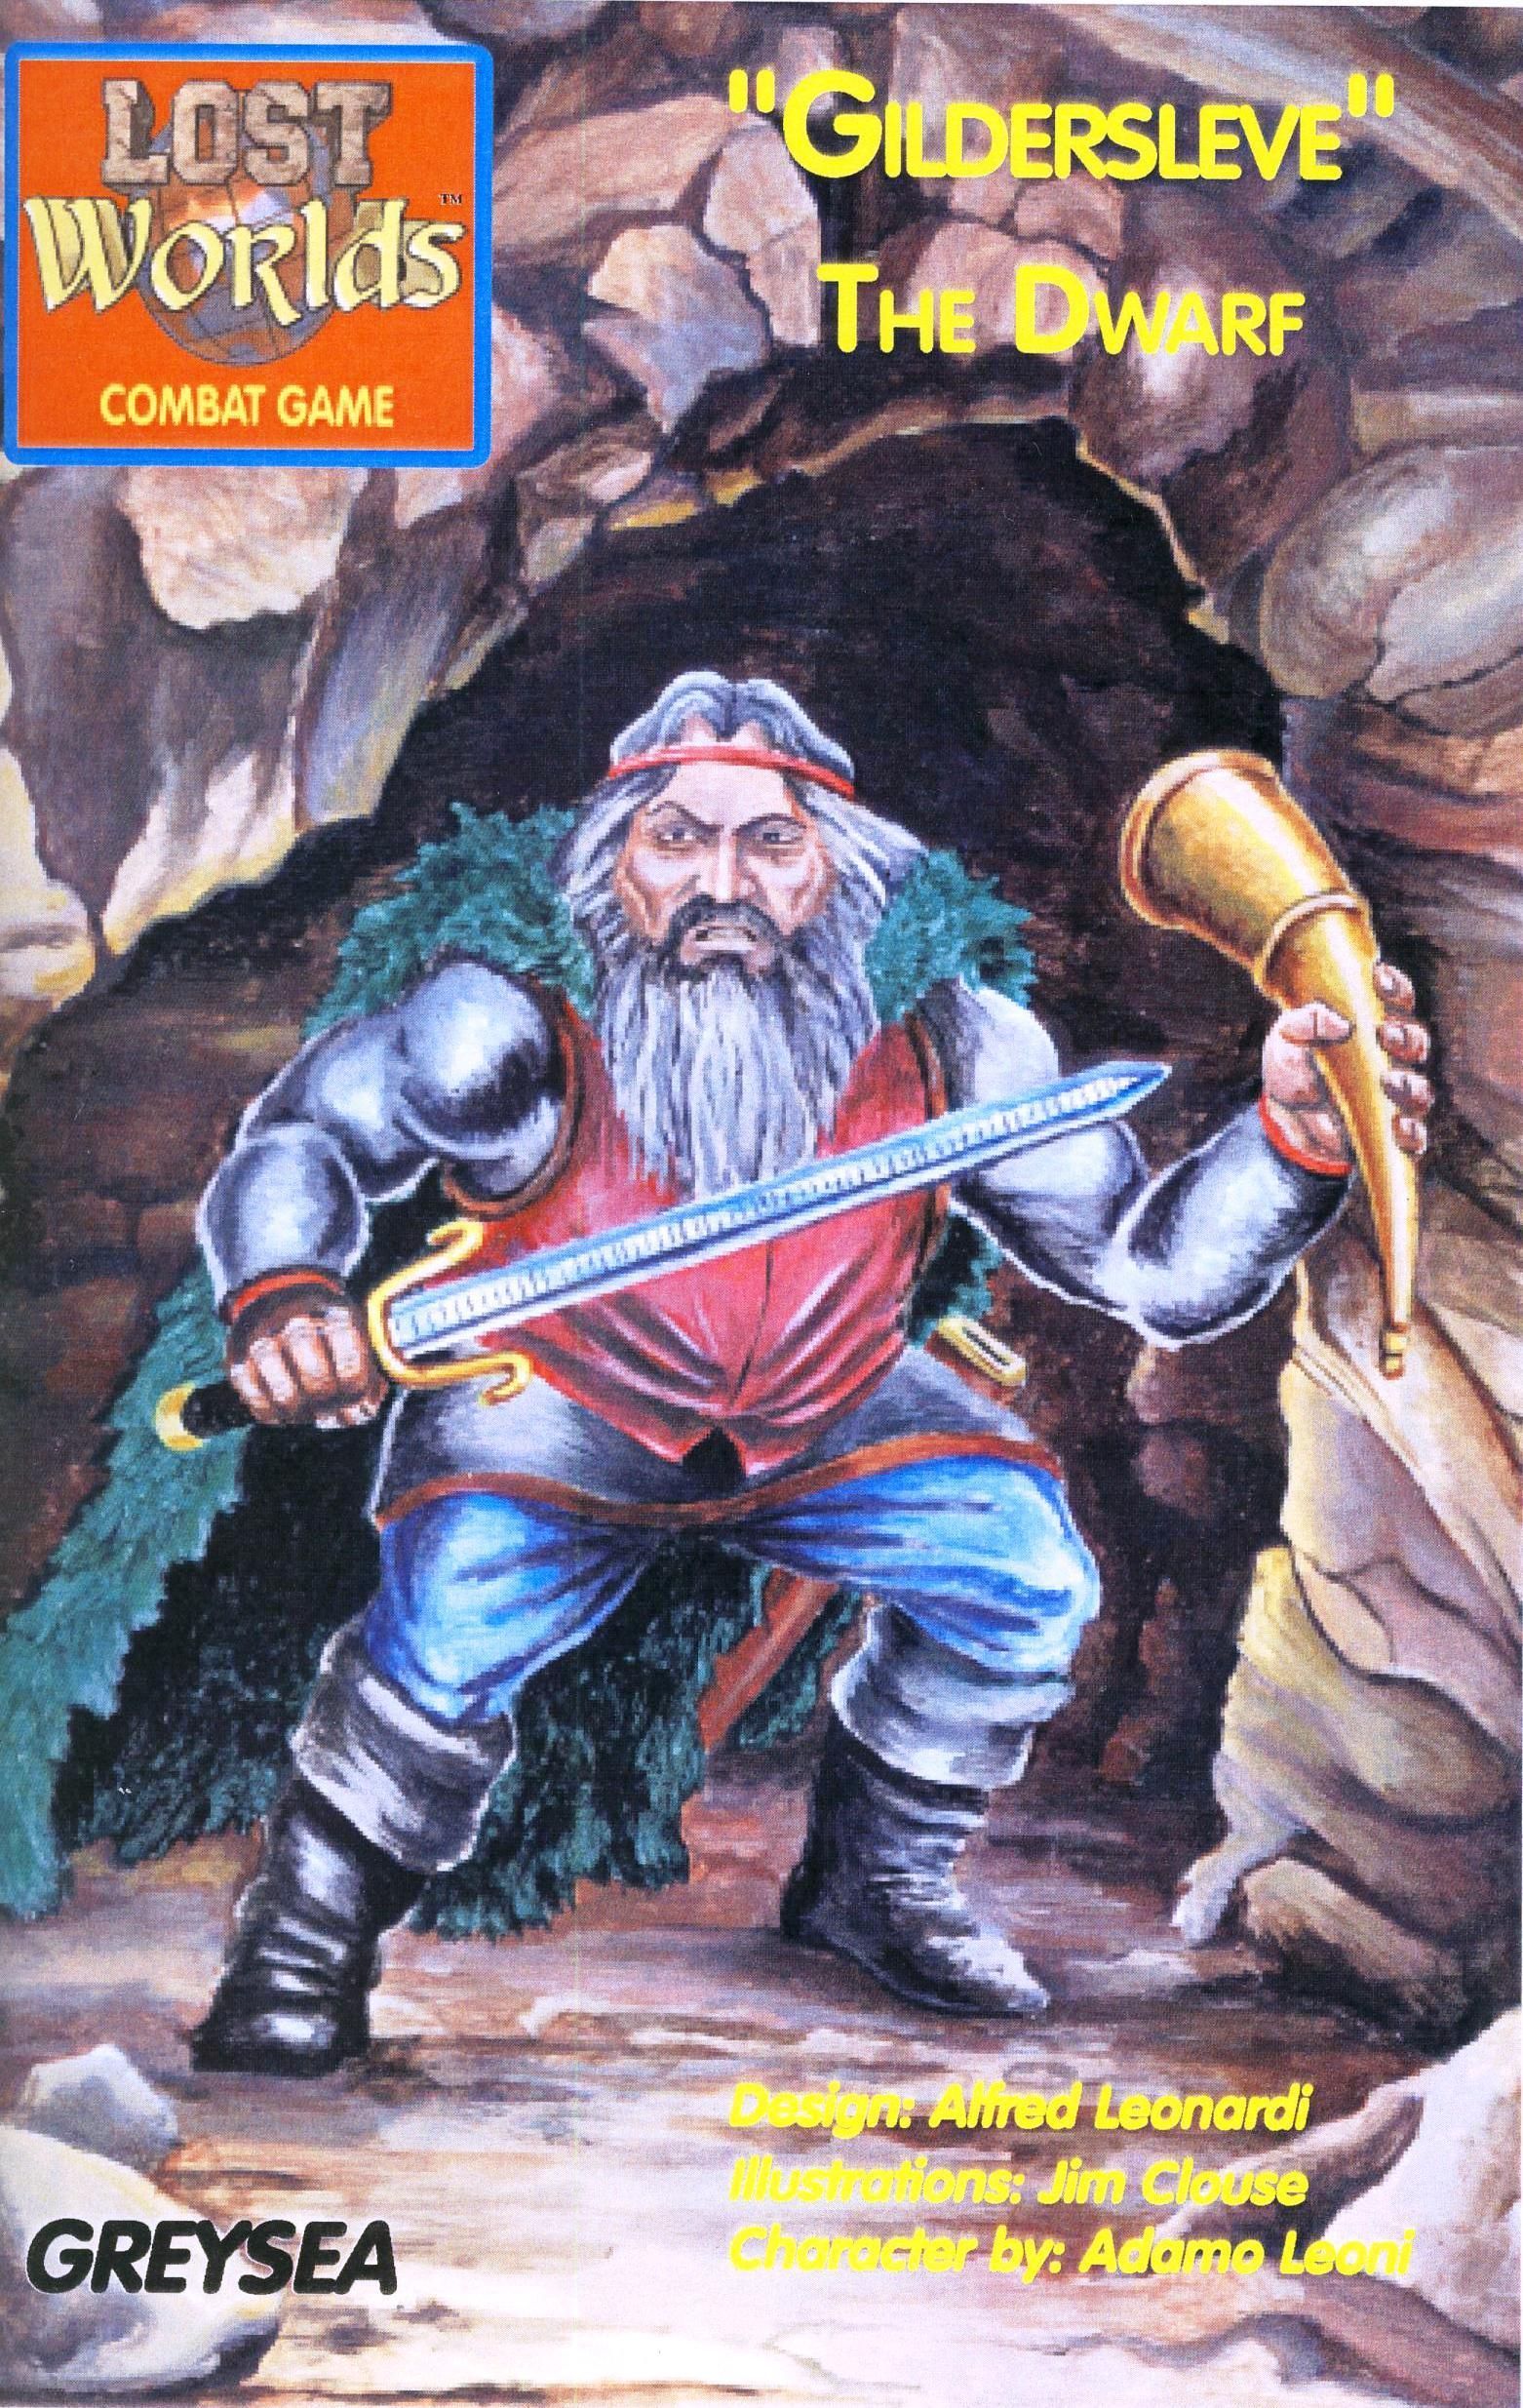 Lost Worlds: "Gildersleve" the Dwarf